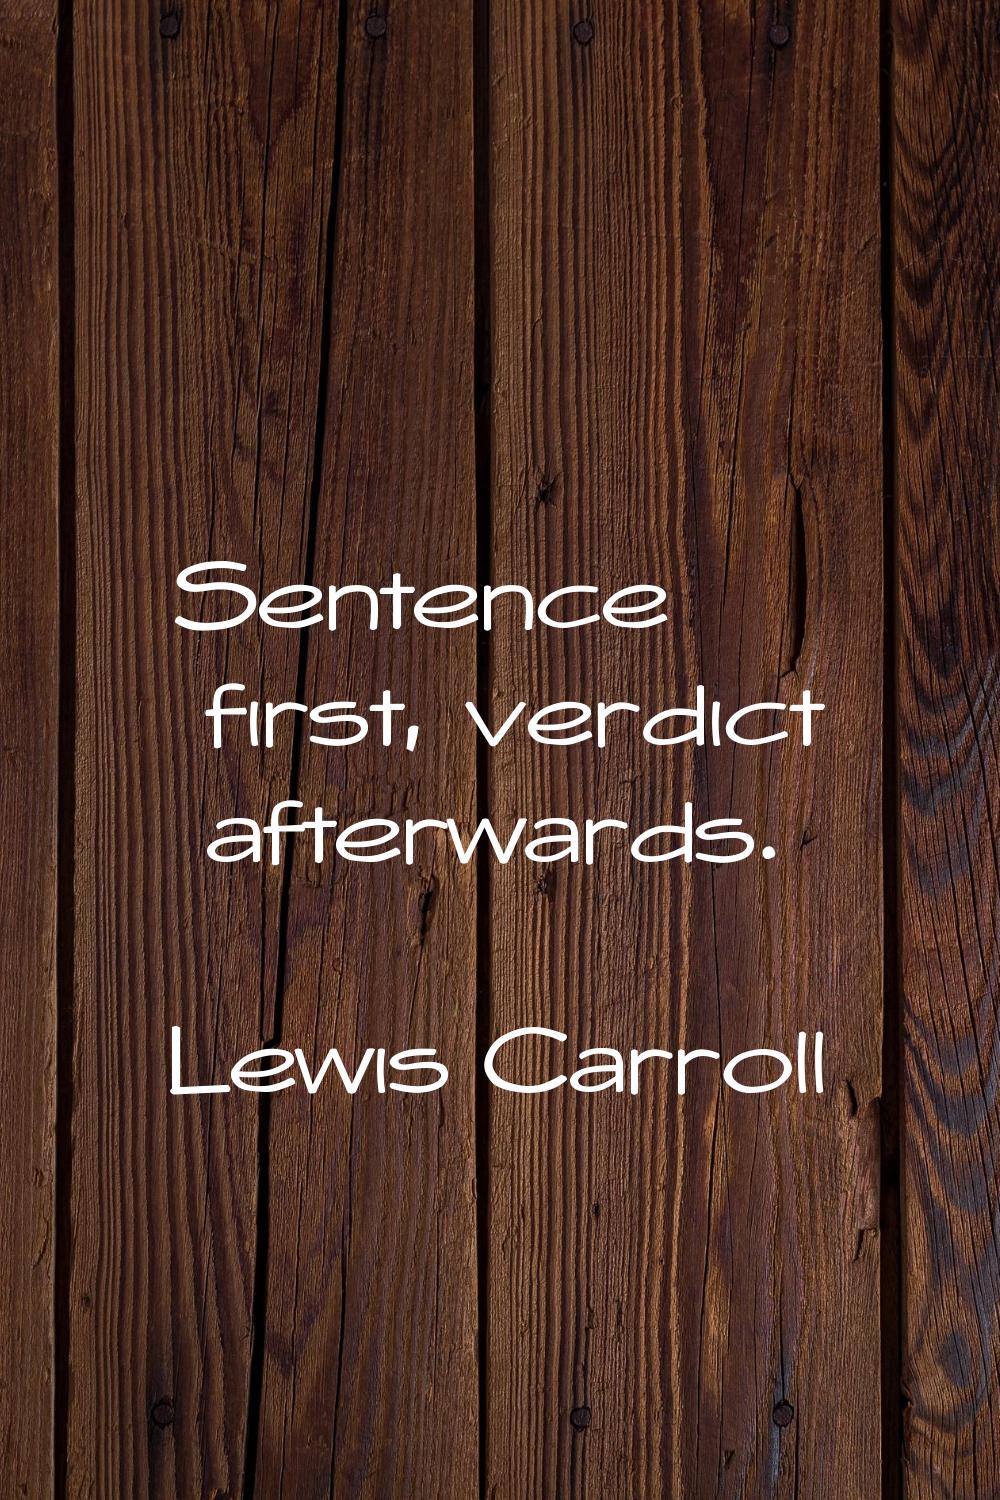 Sentence first, verdict afterwards.